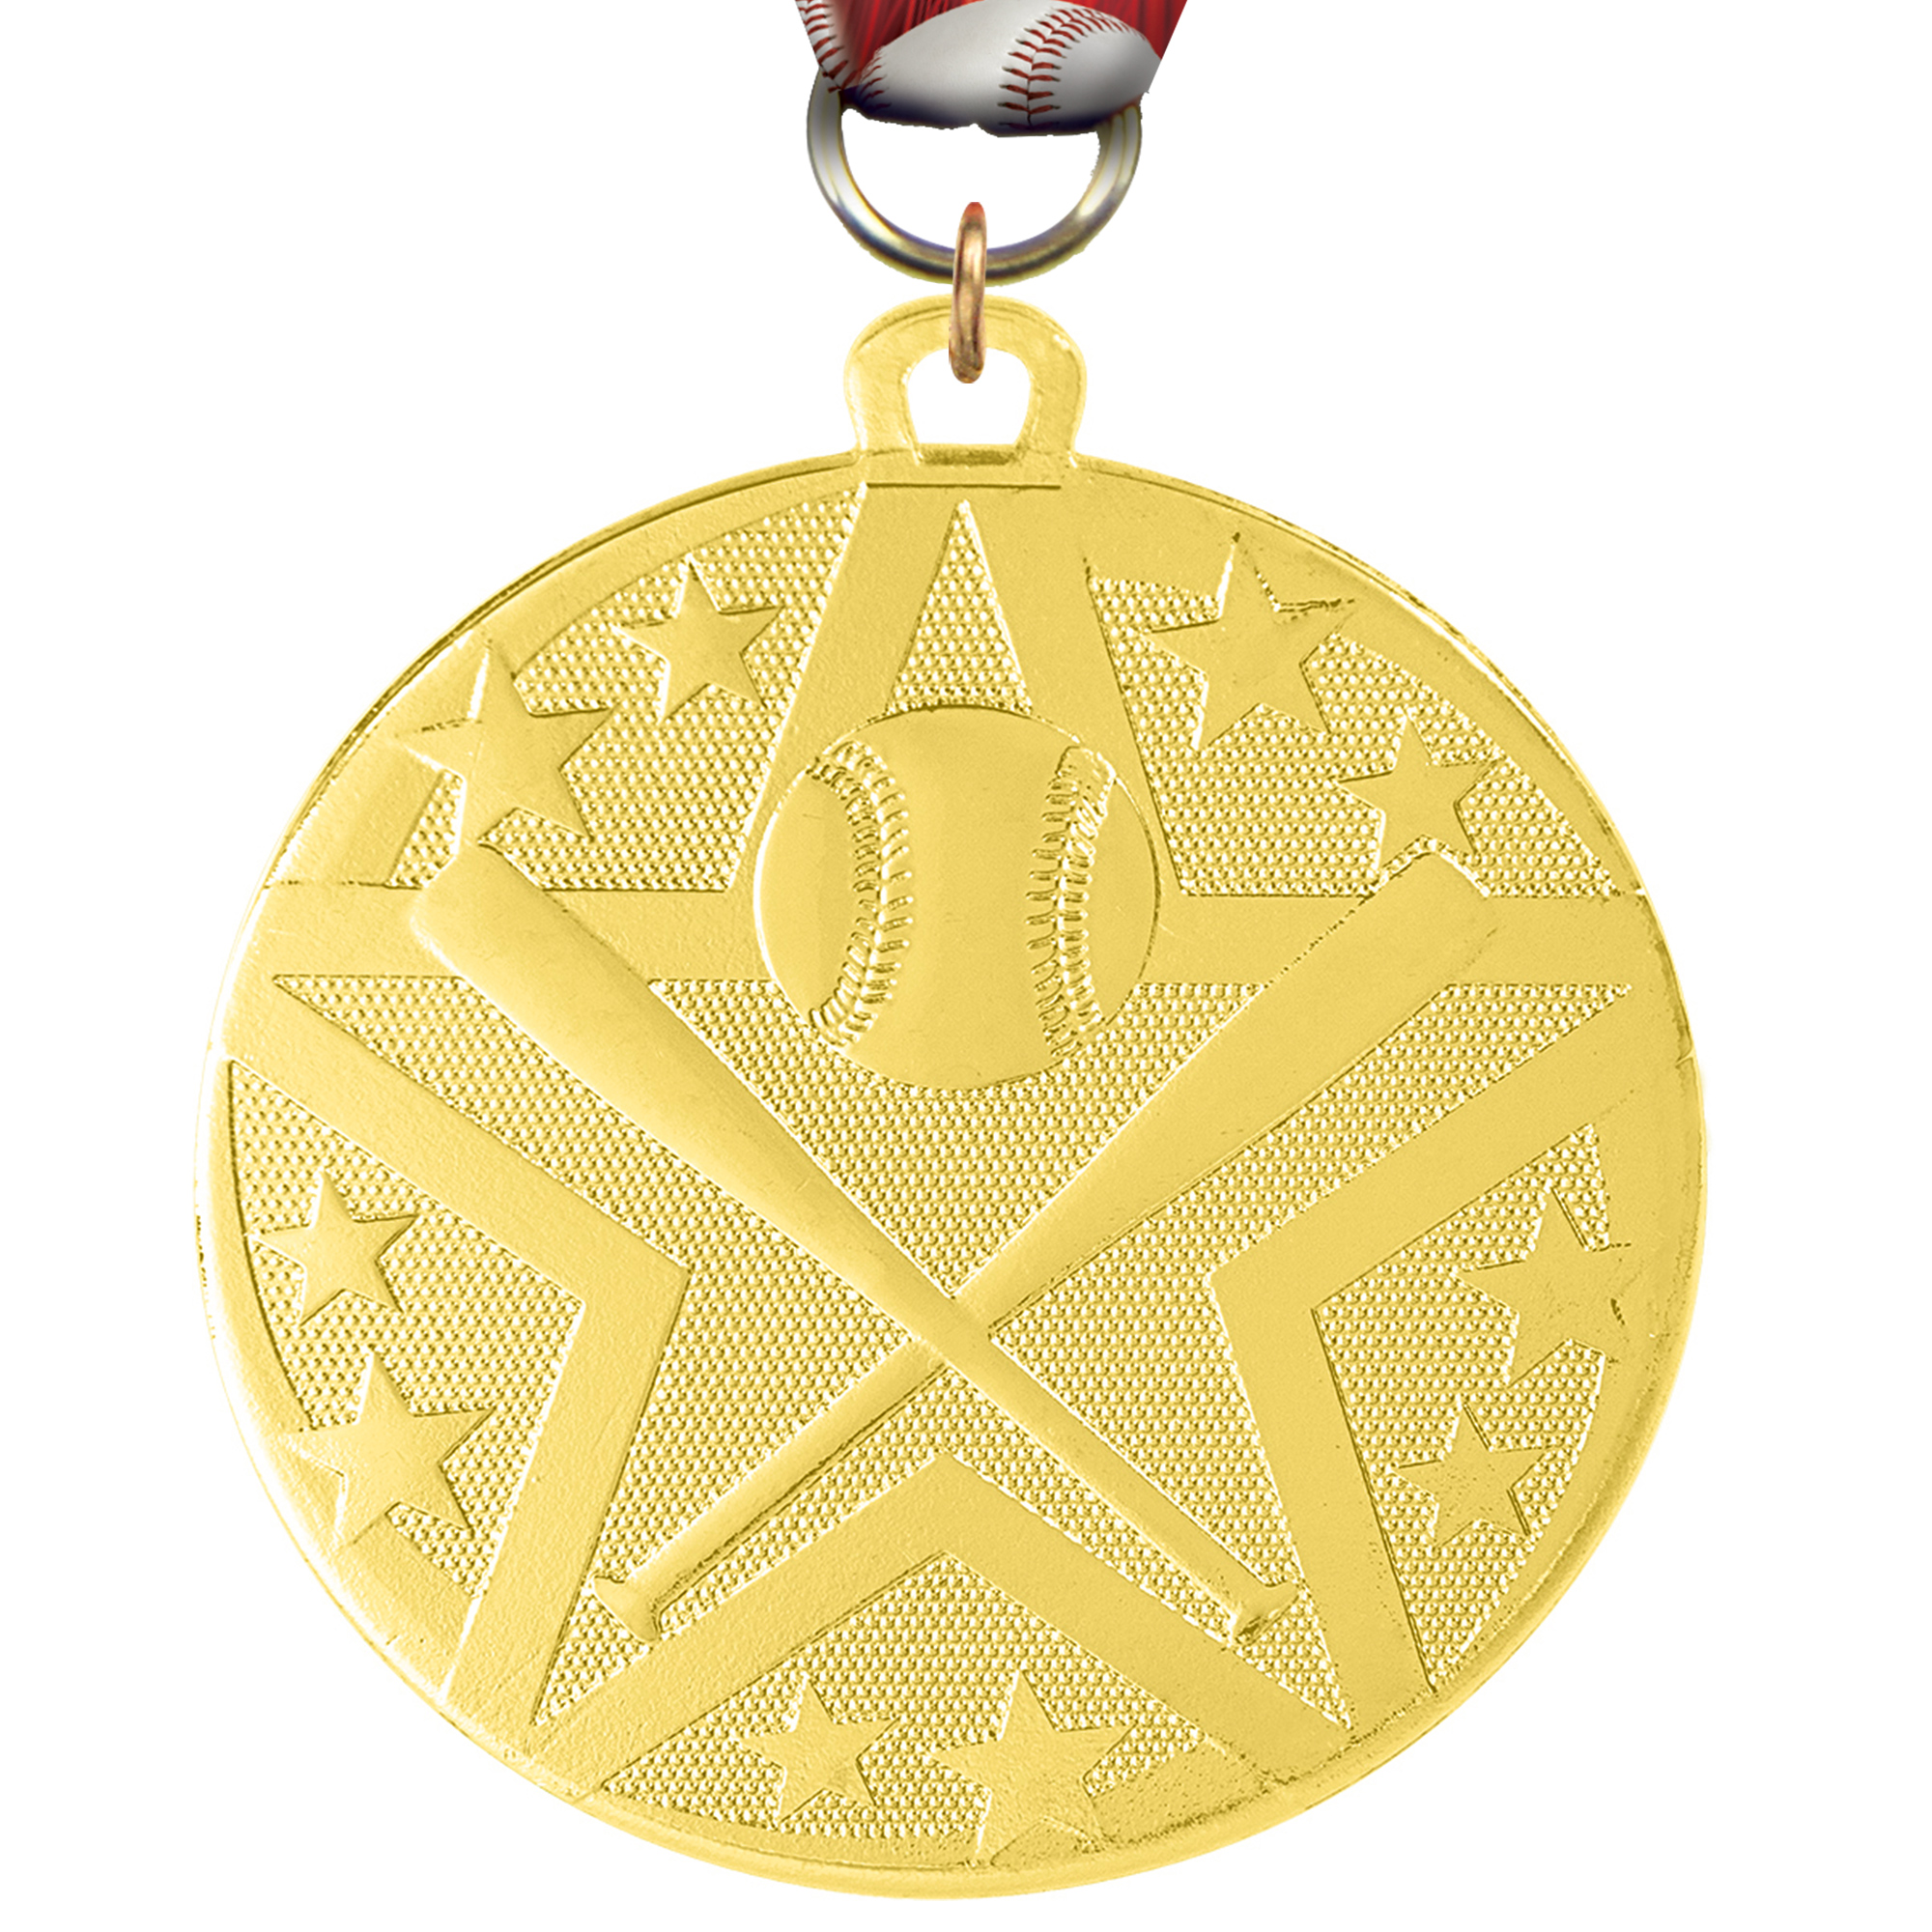 Baseball Bright Superstar Medal